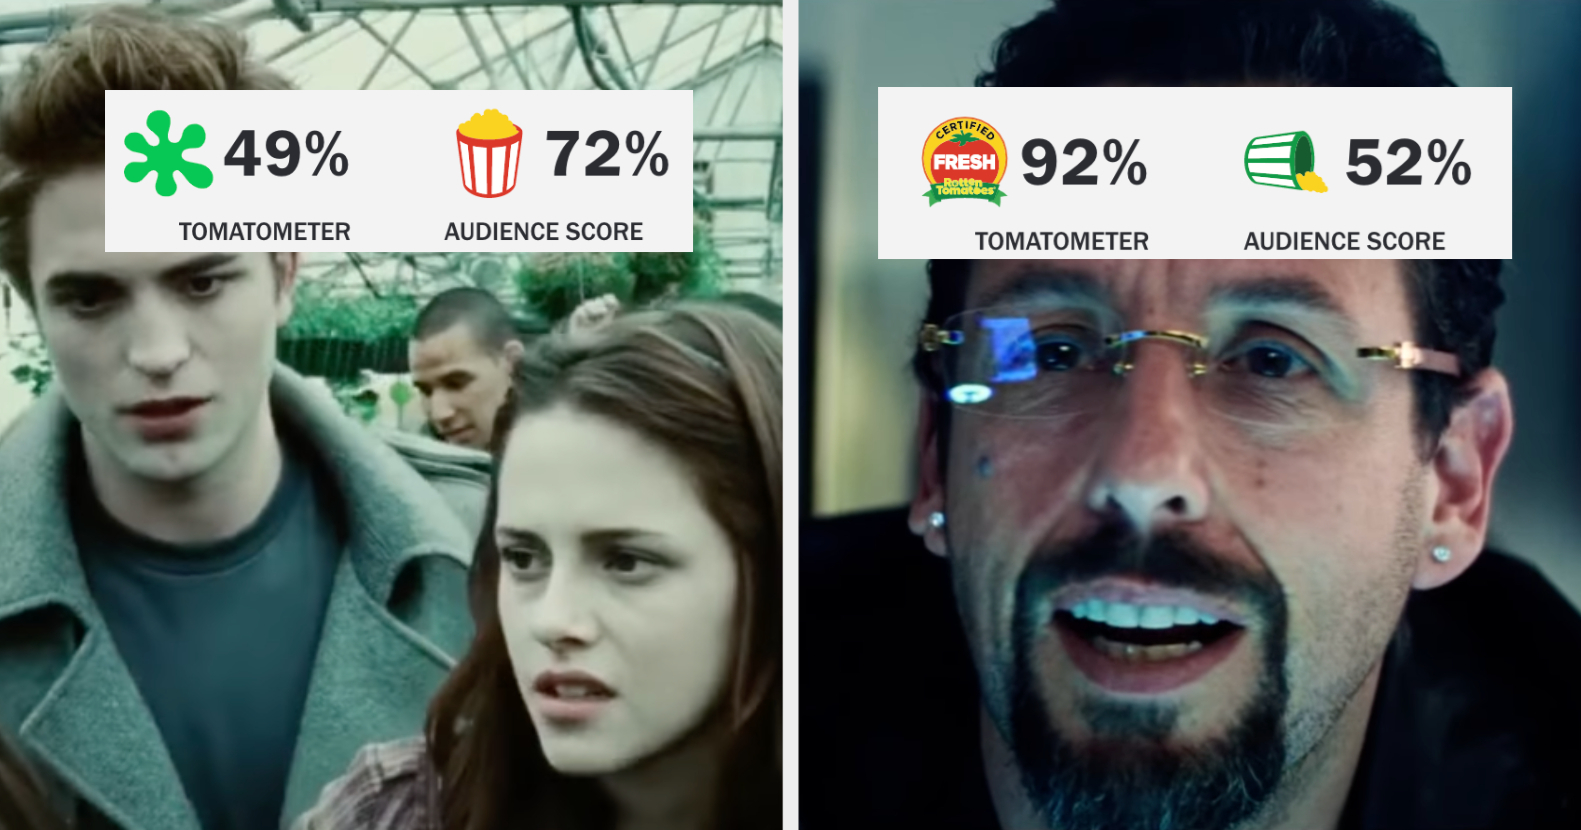 The Last Jedi Rotten Tomatoes Controversy: Critics vs Audiences 